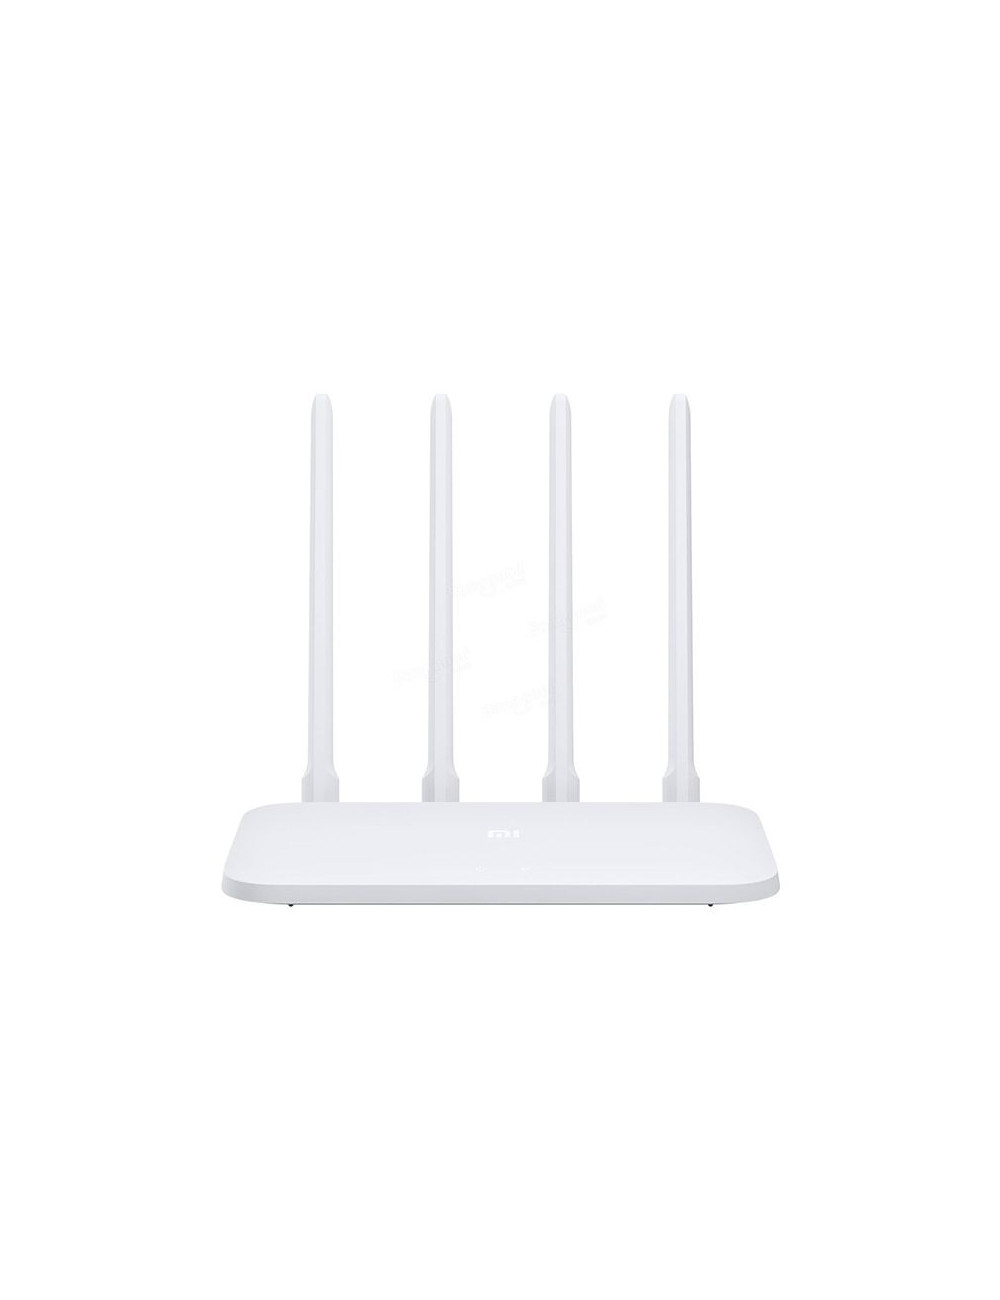 Xiaomi Mi Router 4C 802.11n, 300 Mbit/s, Ethernet LAN (RJ-45) ports 3, Antenna type 4 External Antennas